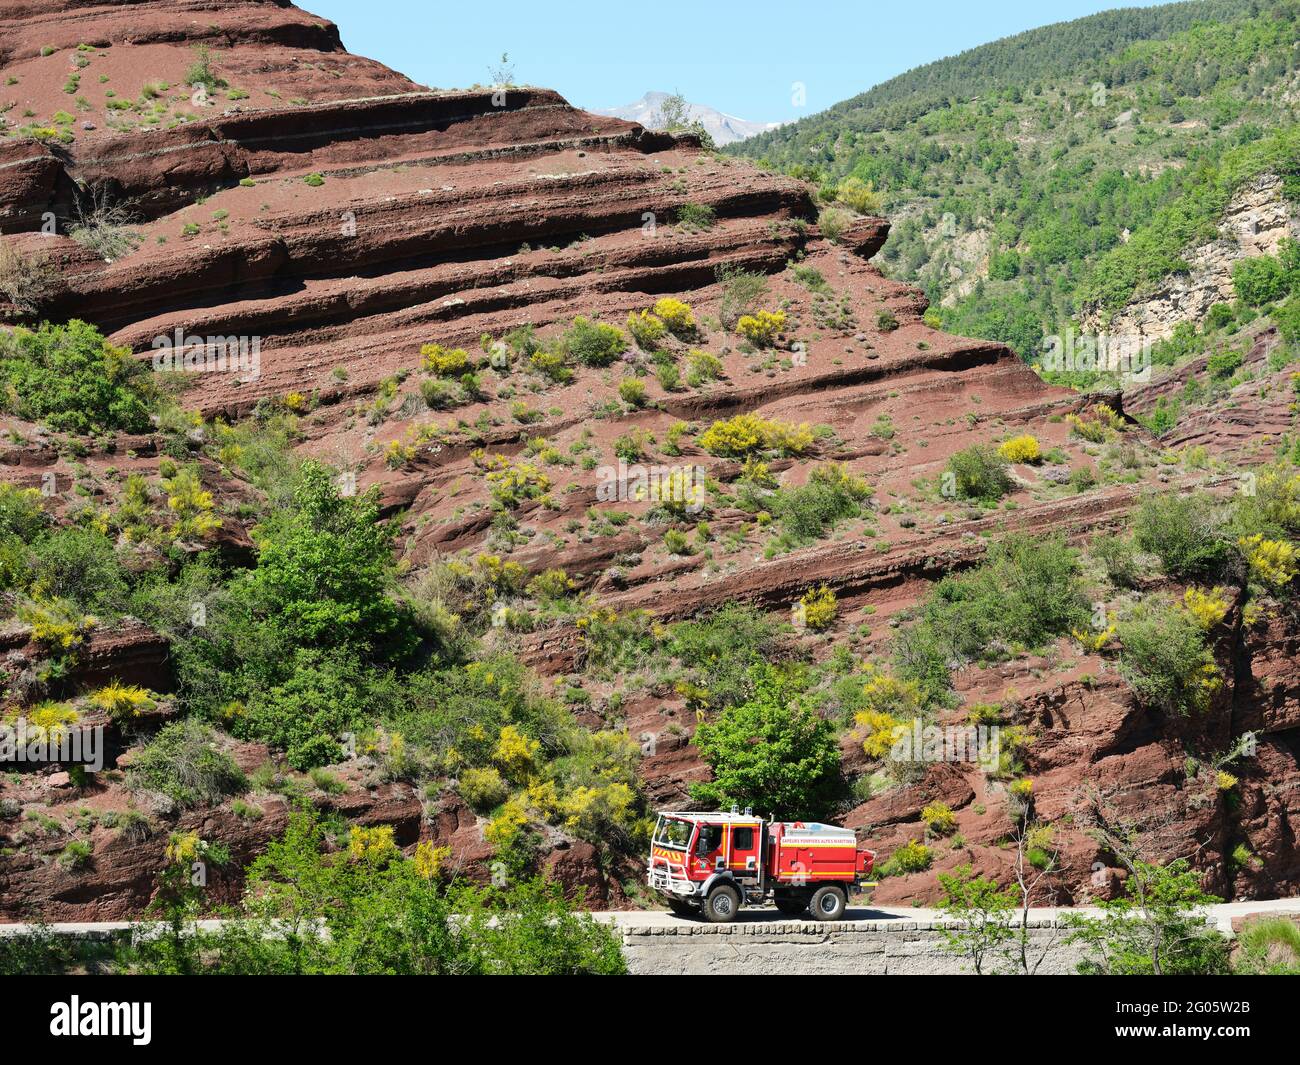 Camion de pompiers tout-terrain avec fond de pompite rouge et balais fleuris. Gorges de Daluis, Guillaumes, Alpes-Maritimes, France. Banque D'Images